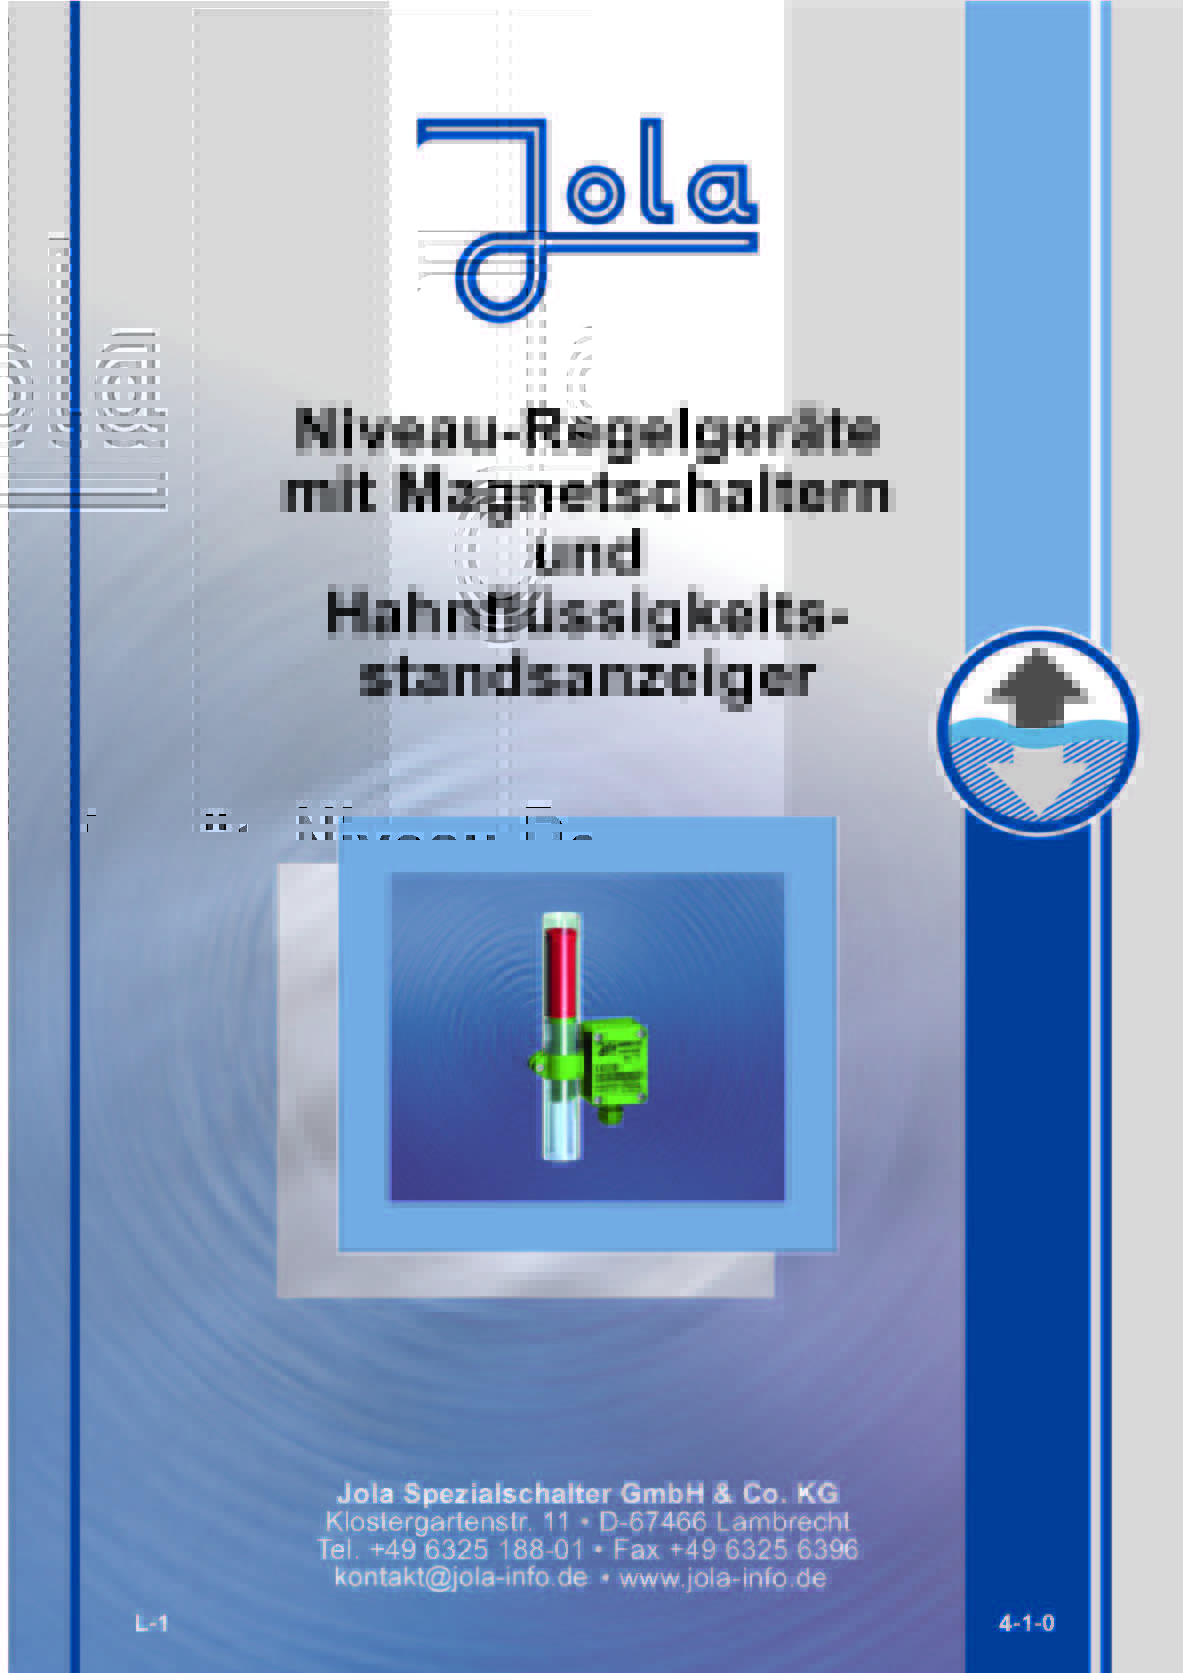 Jola-Niveau-Regelgeräte mit Magnetschaltern und Hahnflüssigkeitesstandsanzeiger